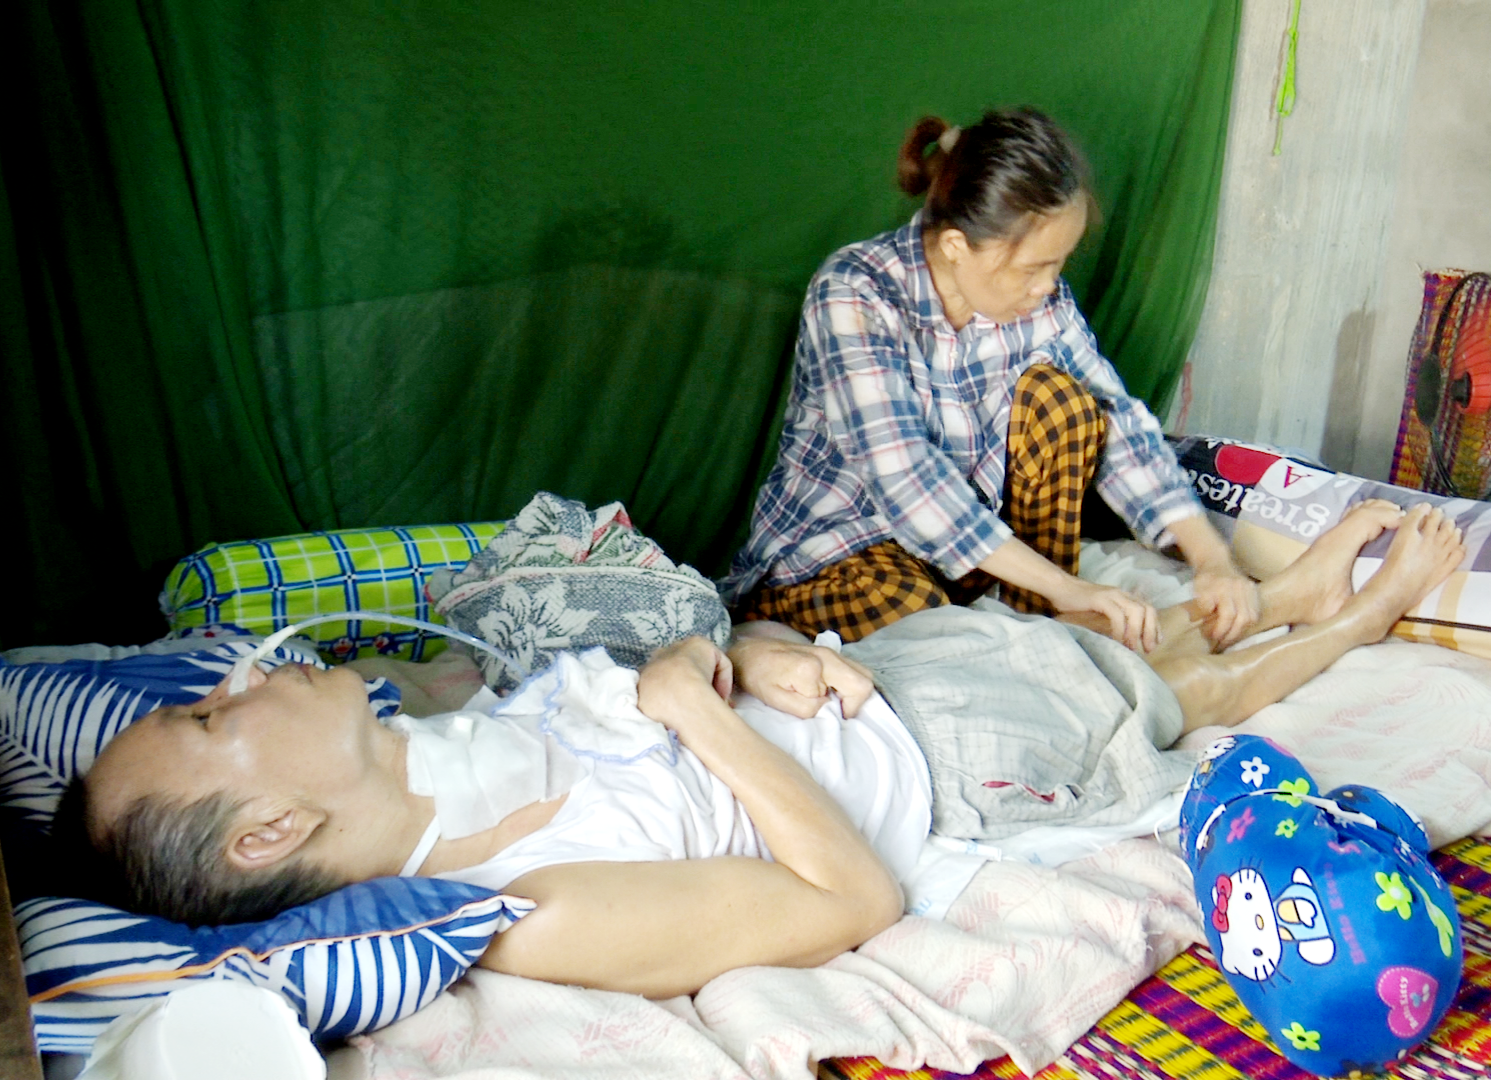 Gia đình cựu chiến binh Nguyễn Xuân Cường hết sức khó khăn, cần sự giúp đỡ. Ảnh: N.D